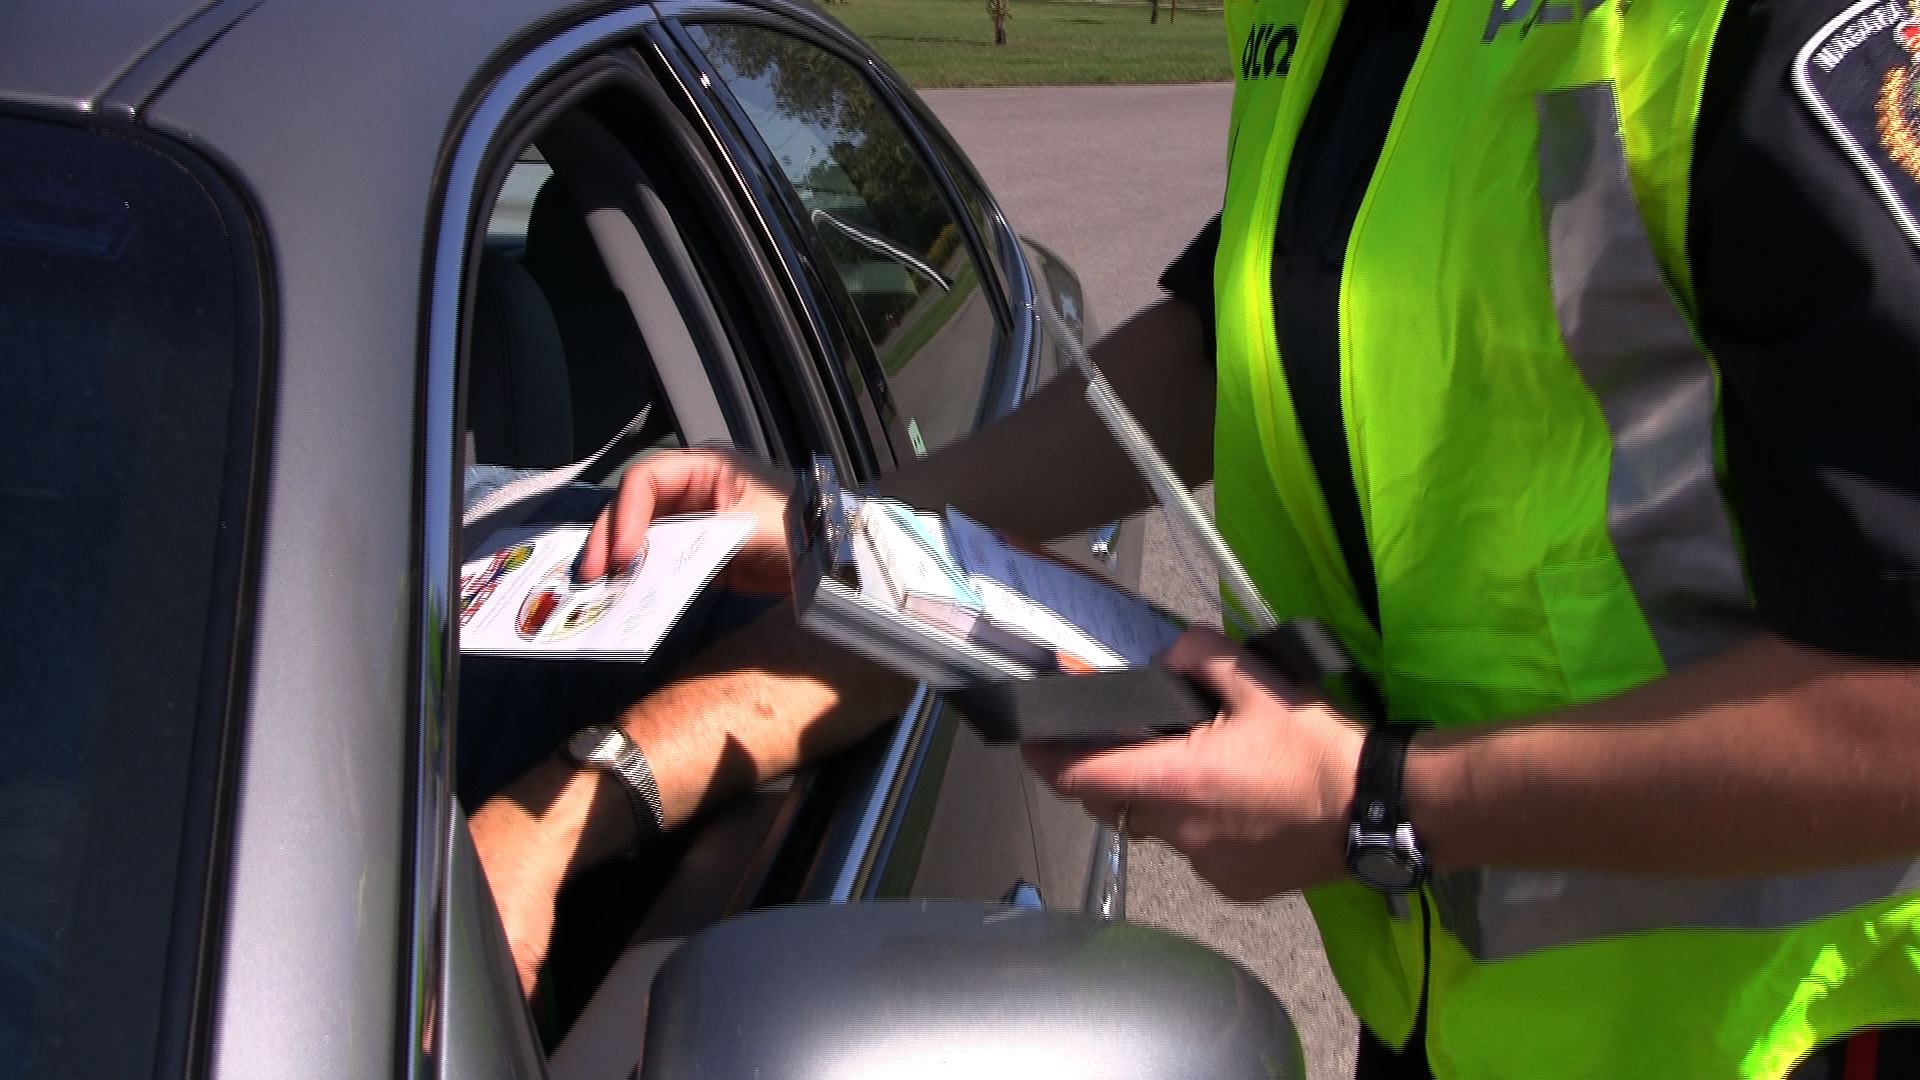 Officer giving motorist a traffic ticket